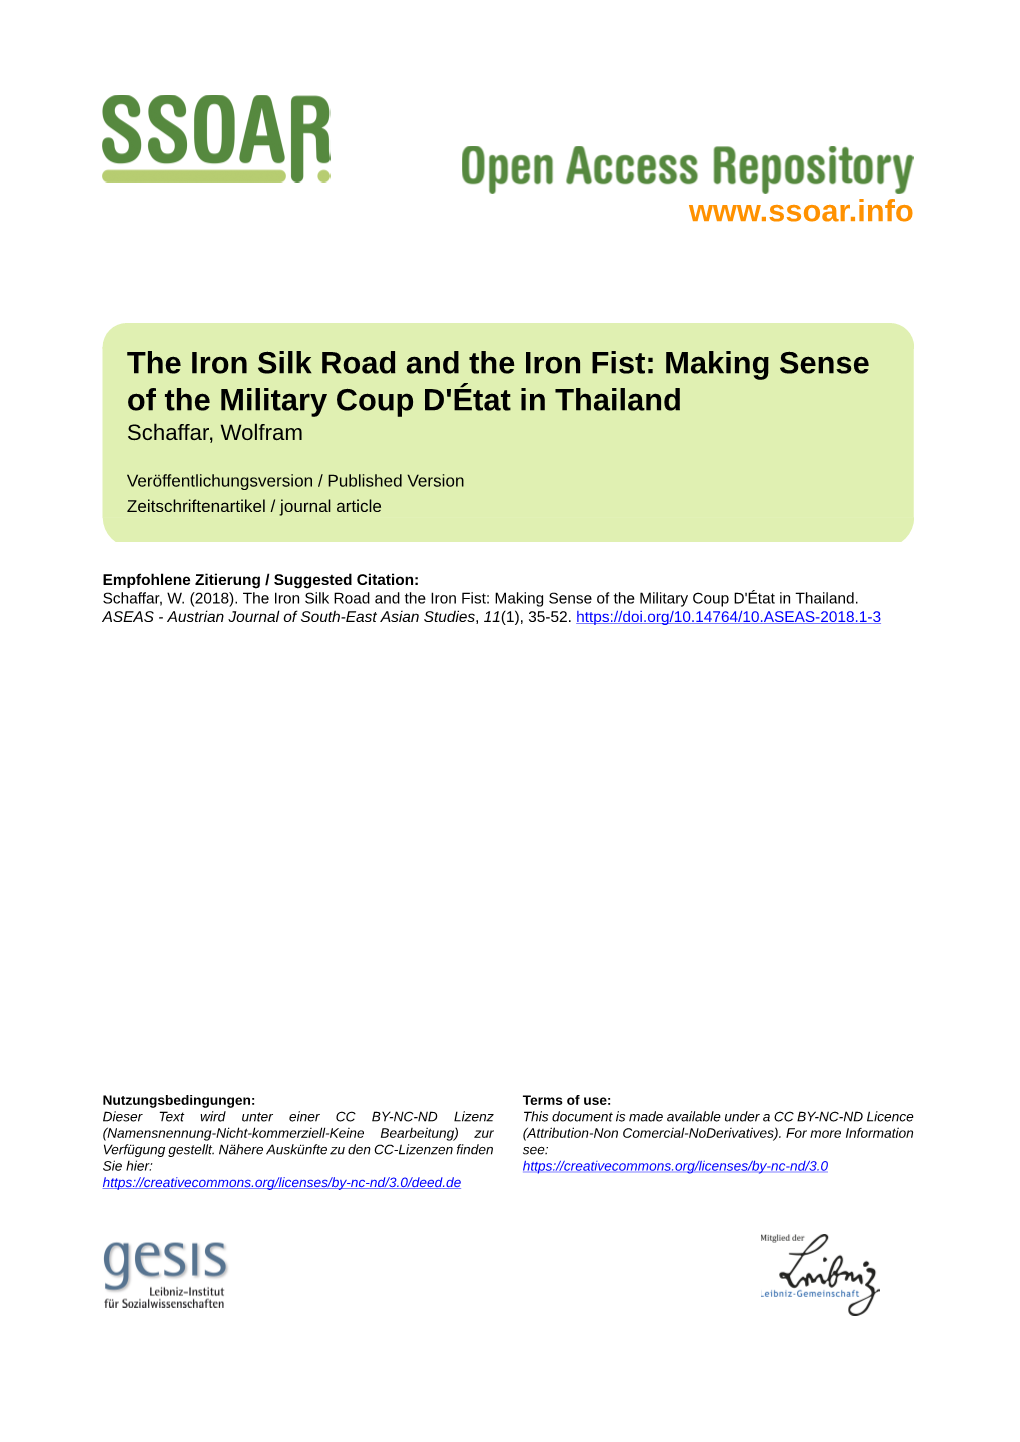 Making Sense of the Military Coup D'état in Thailand Schaffar, Wolfram